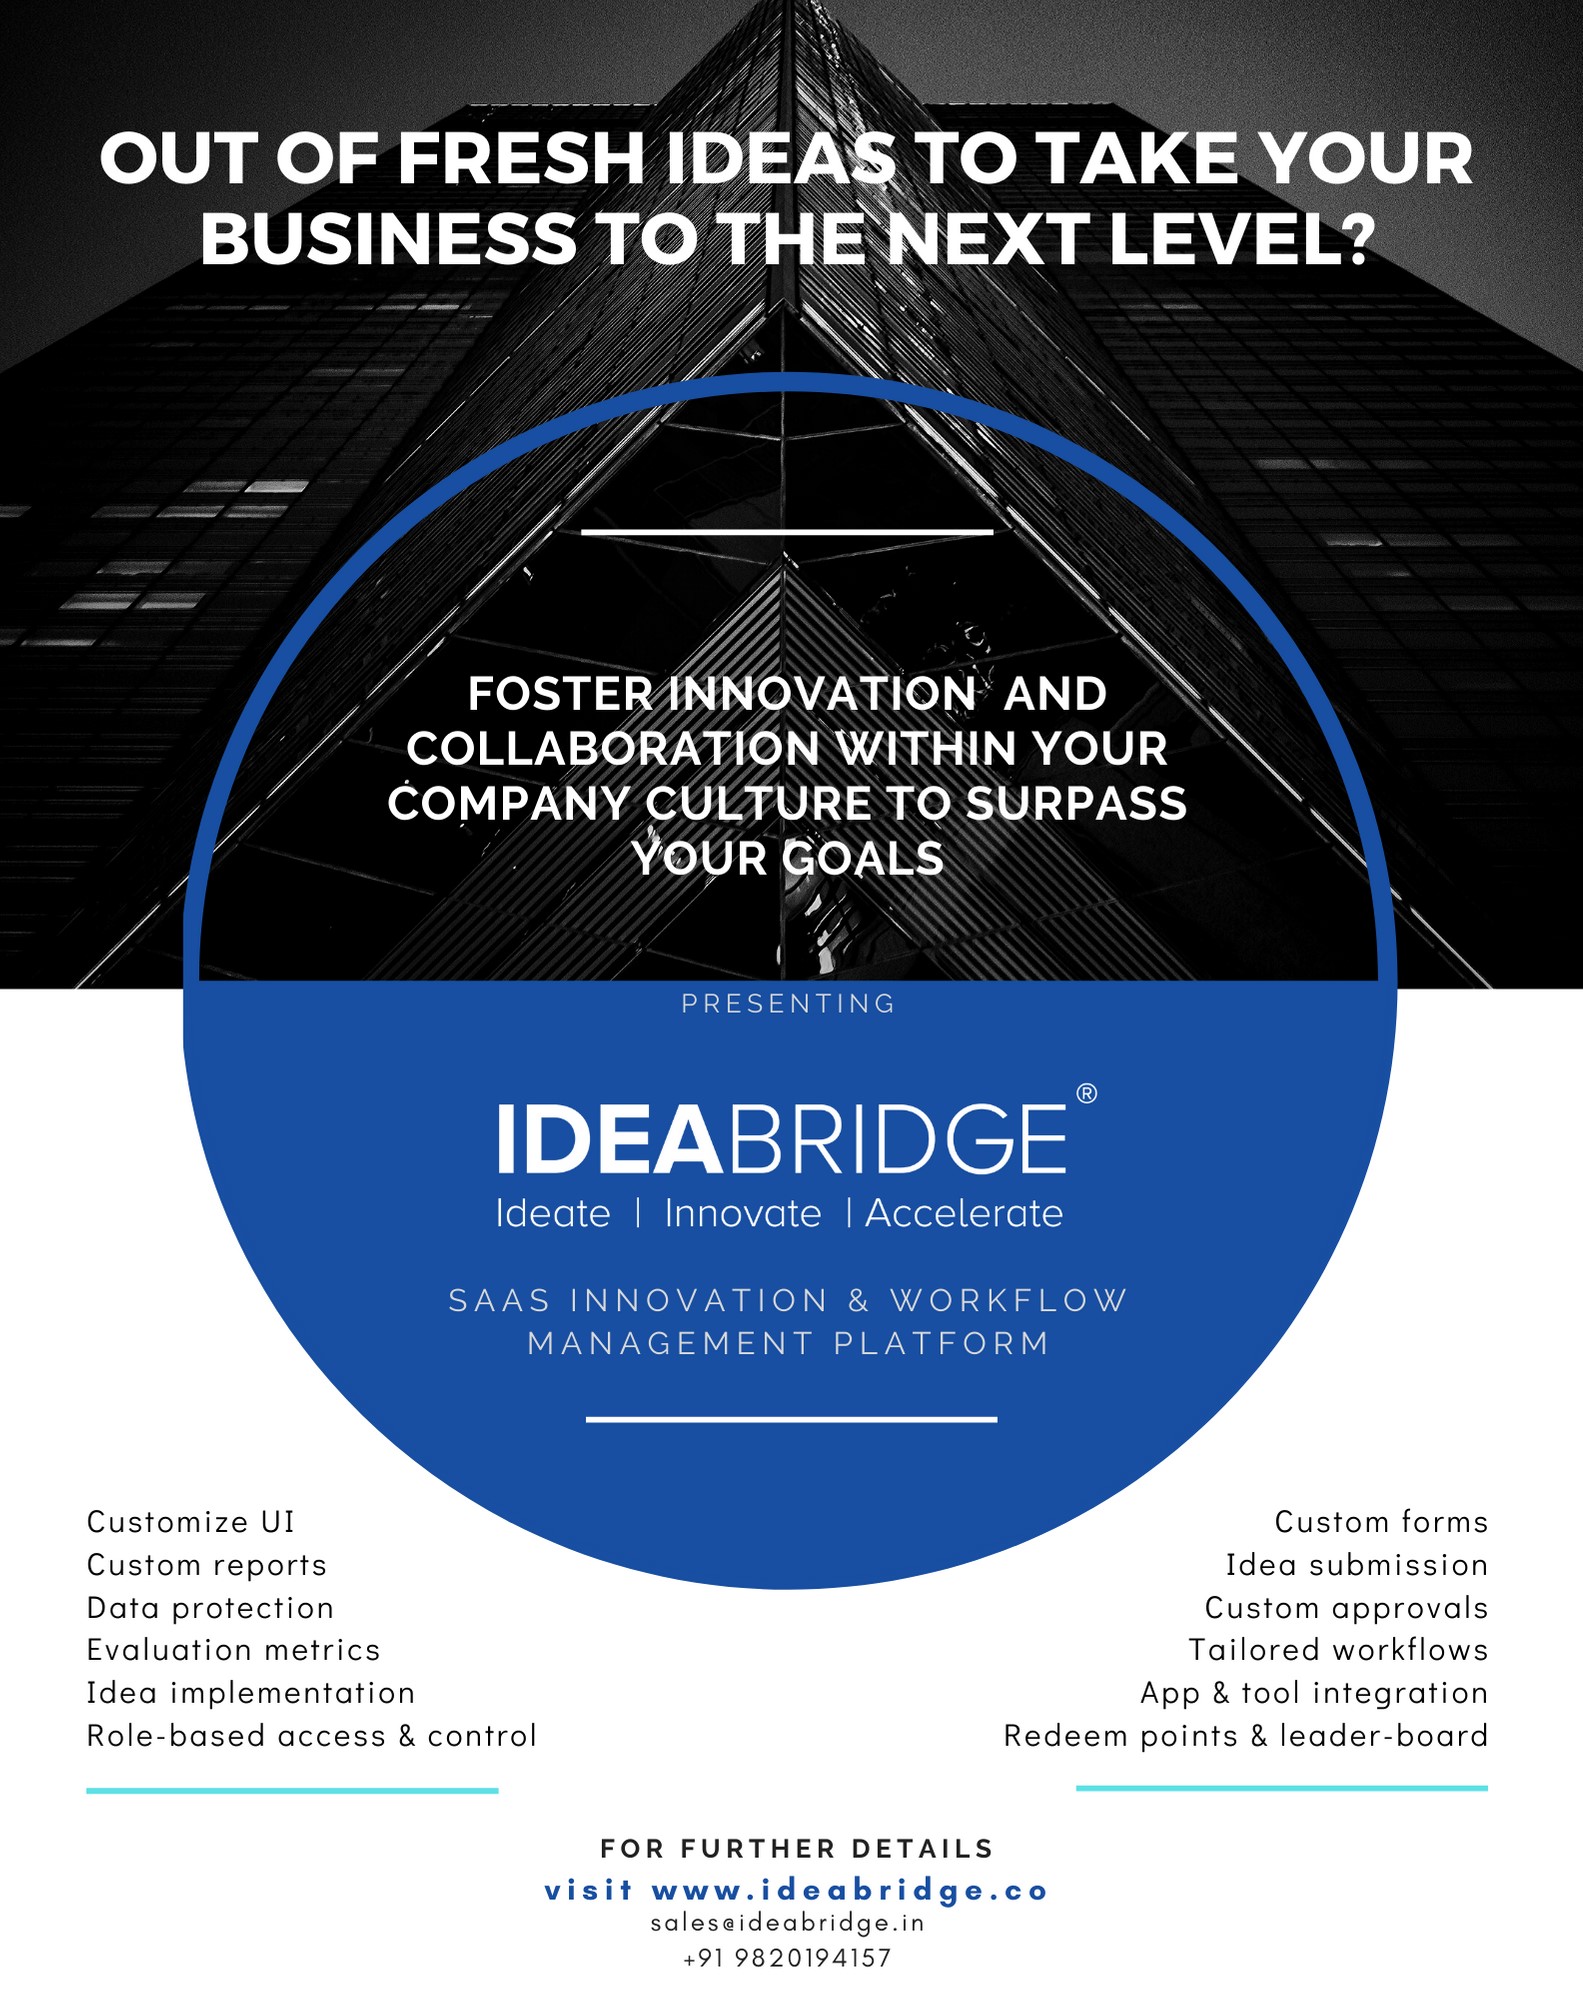 Ideabridge SAAS Platform